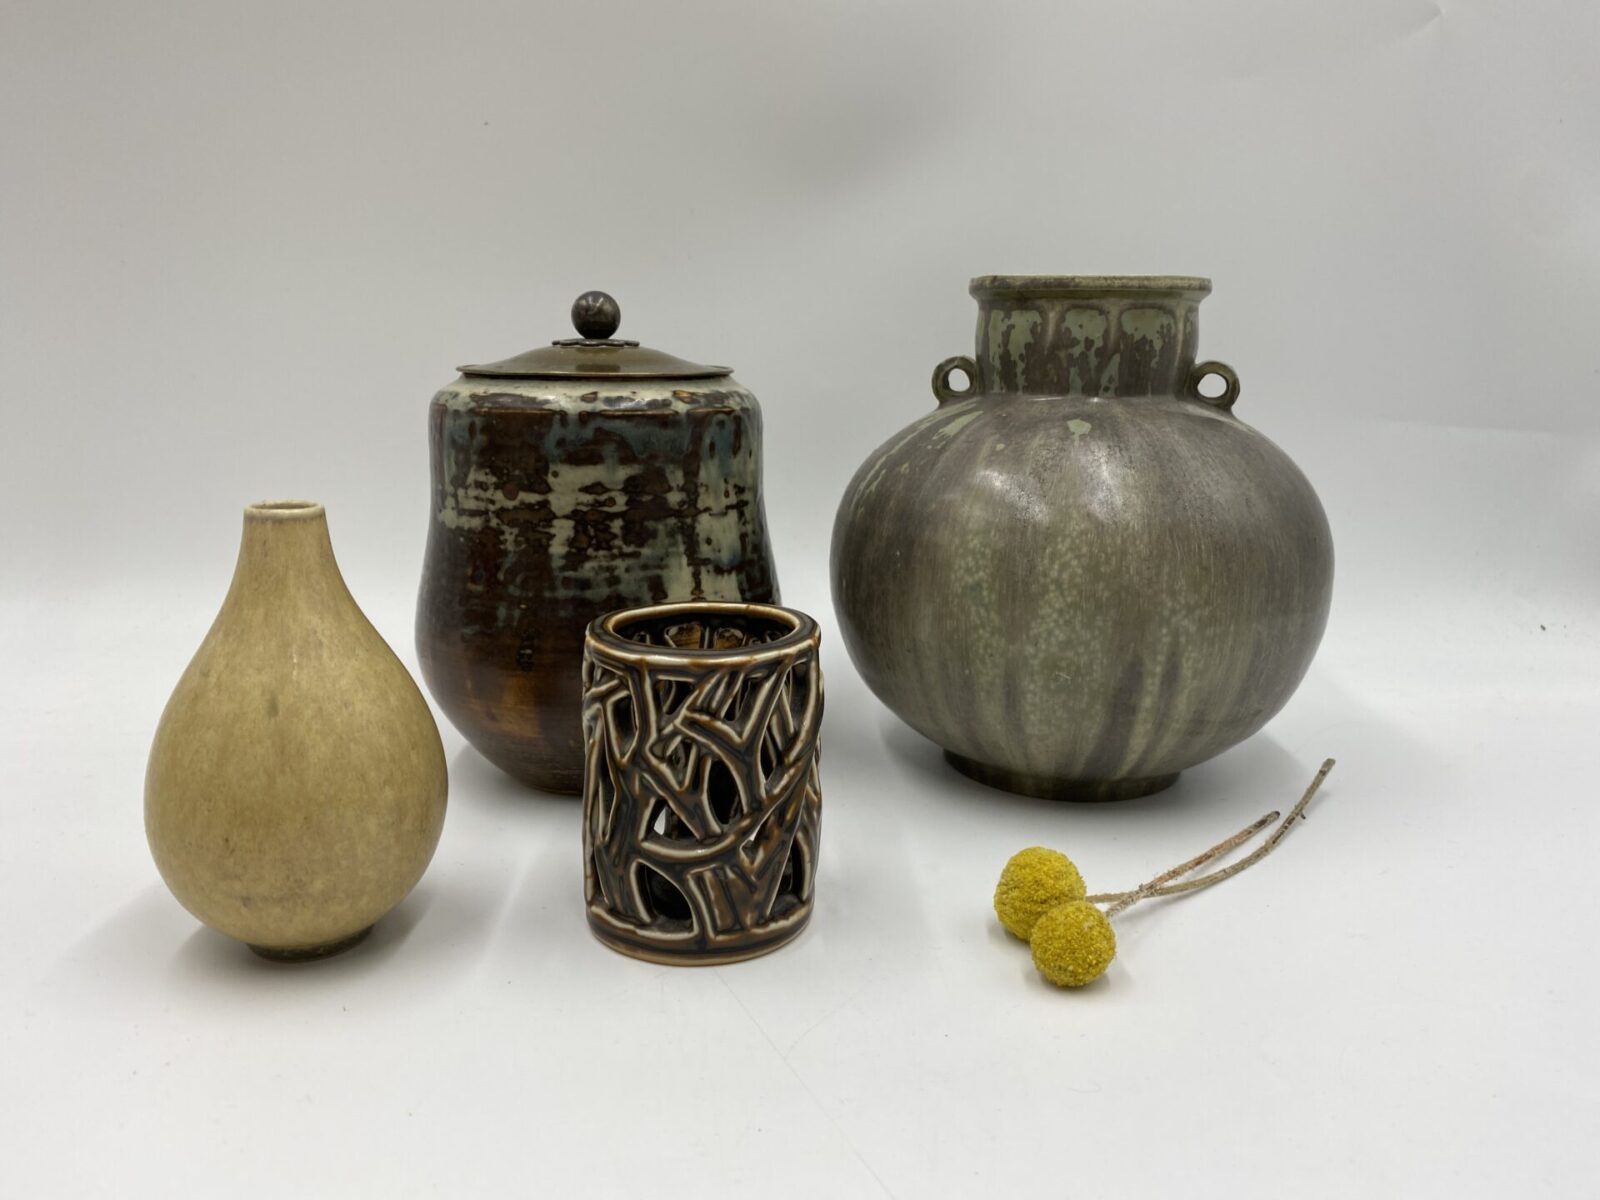 kobber Medalje krise Antik keramik | Vi opkøber brugt keramik | Få en god handel